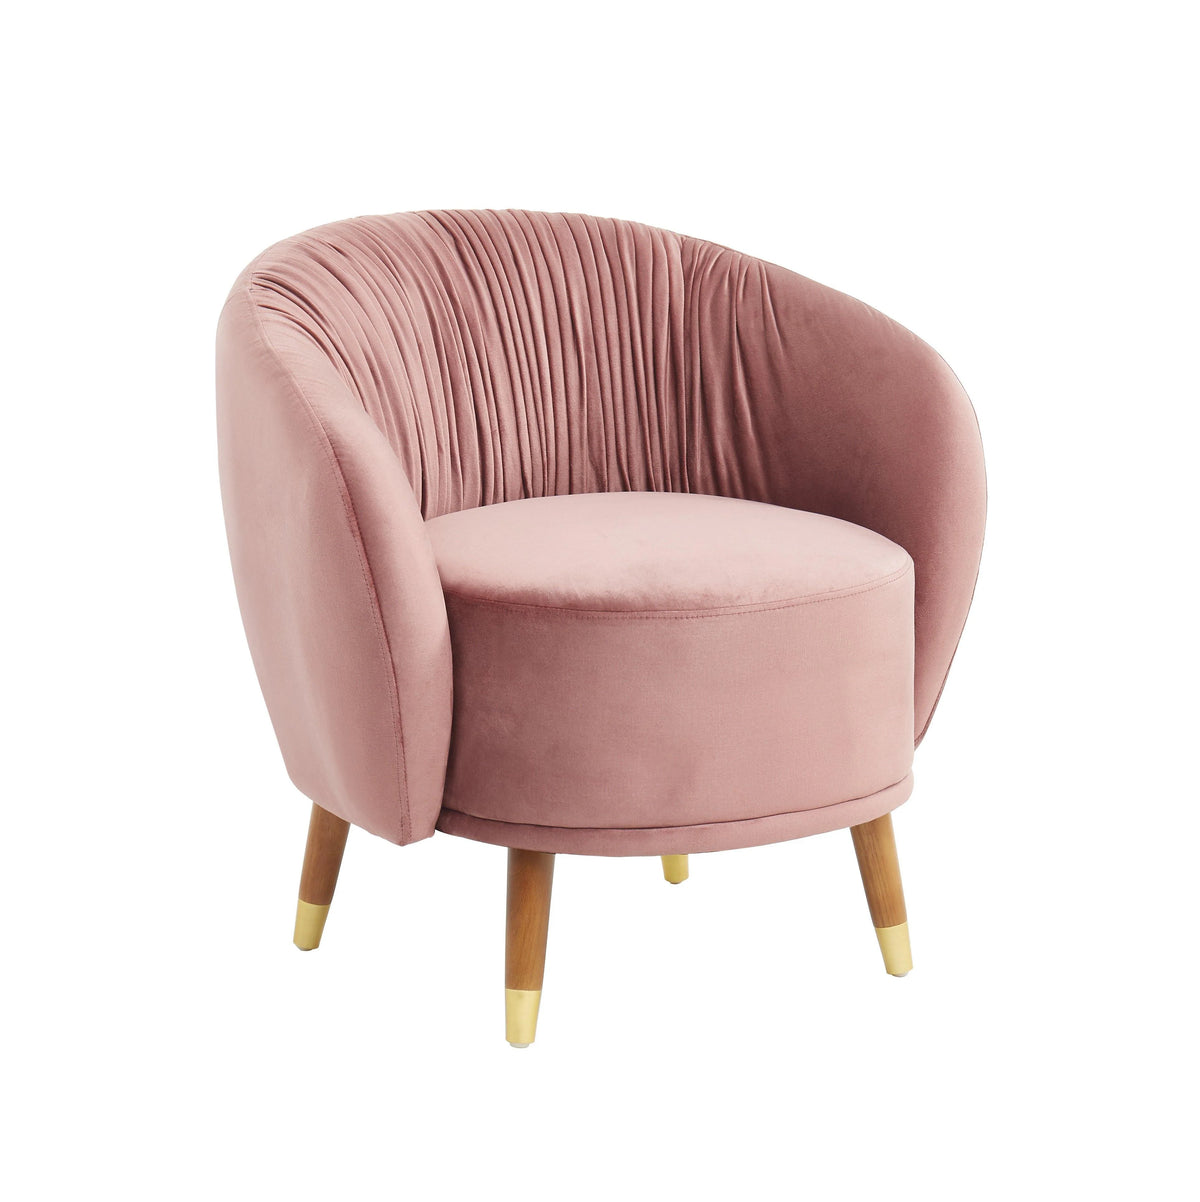 Kiona Pleated Armchair - Pink Velvet Finish